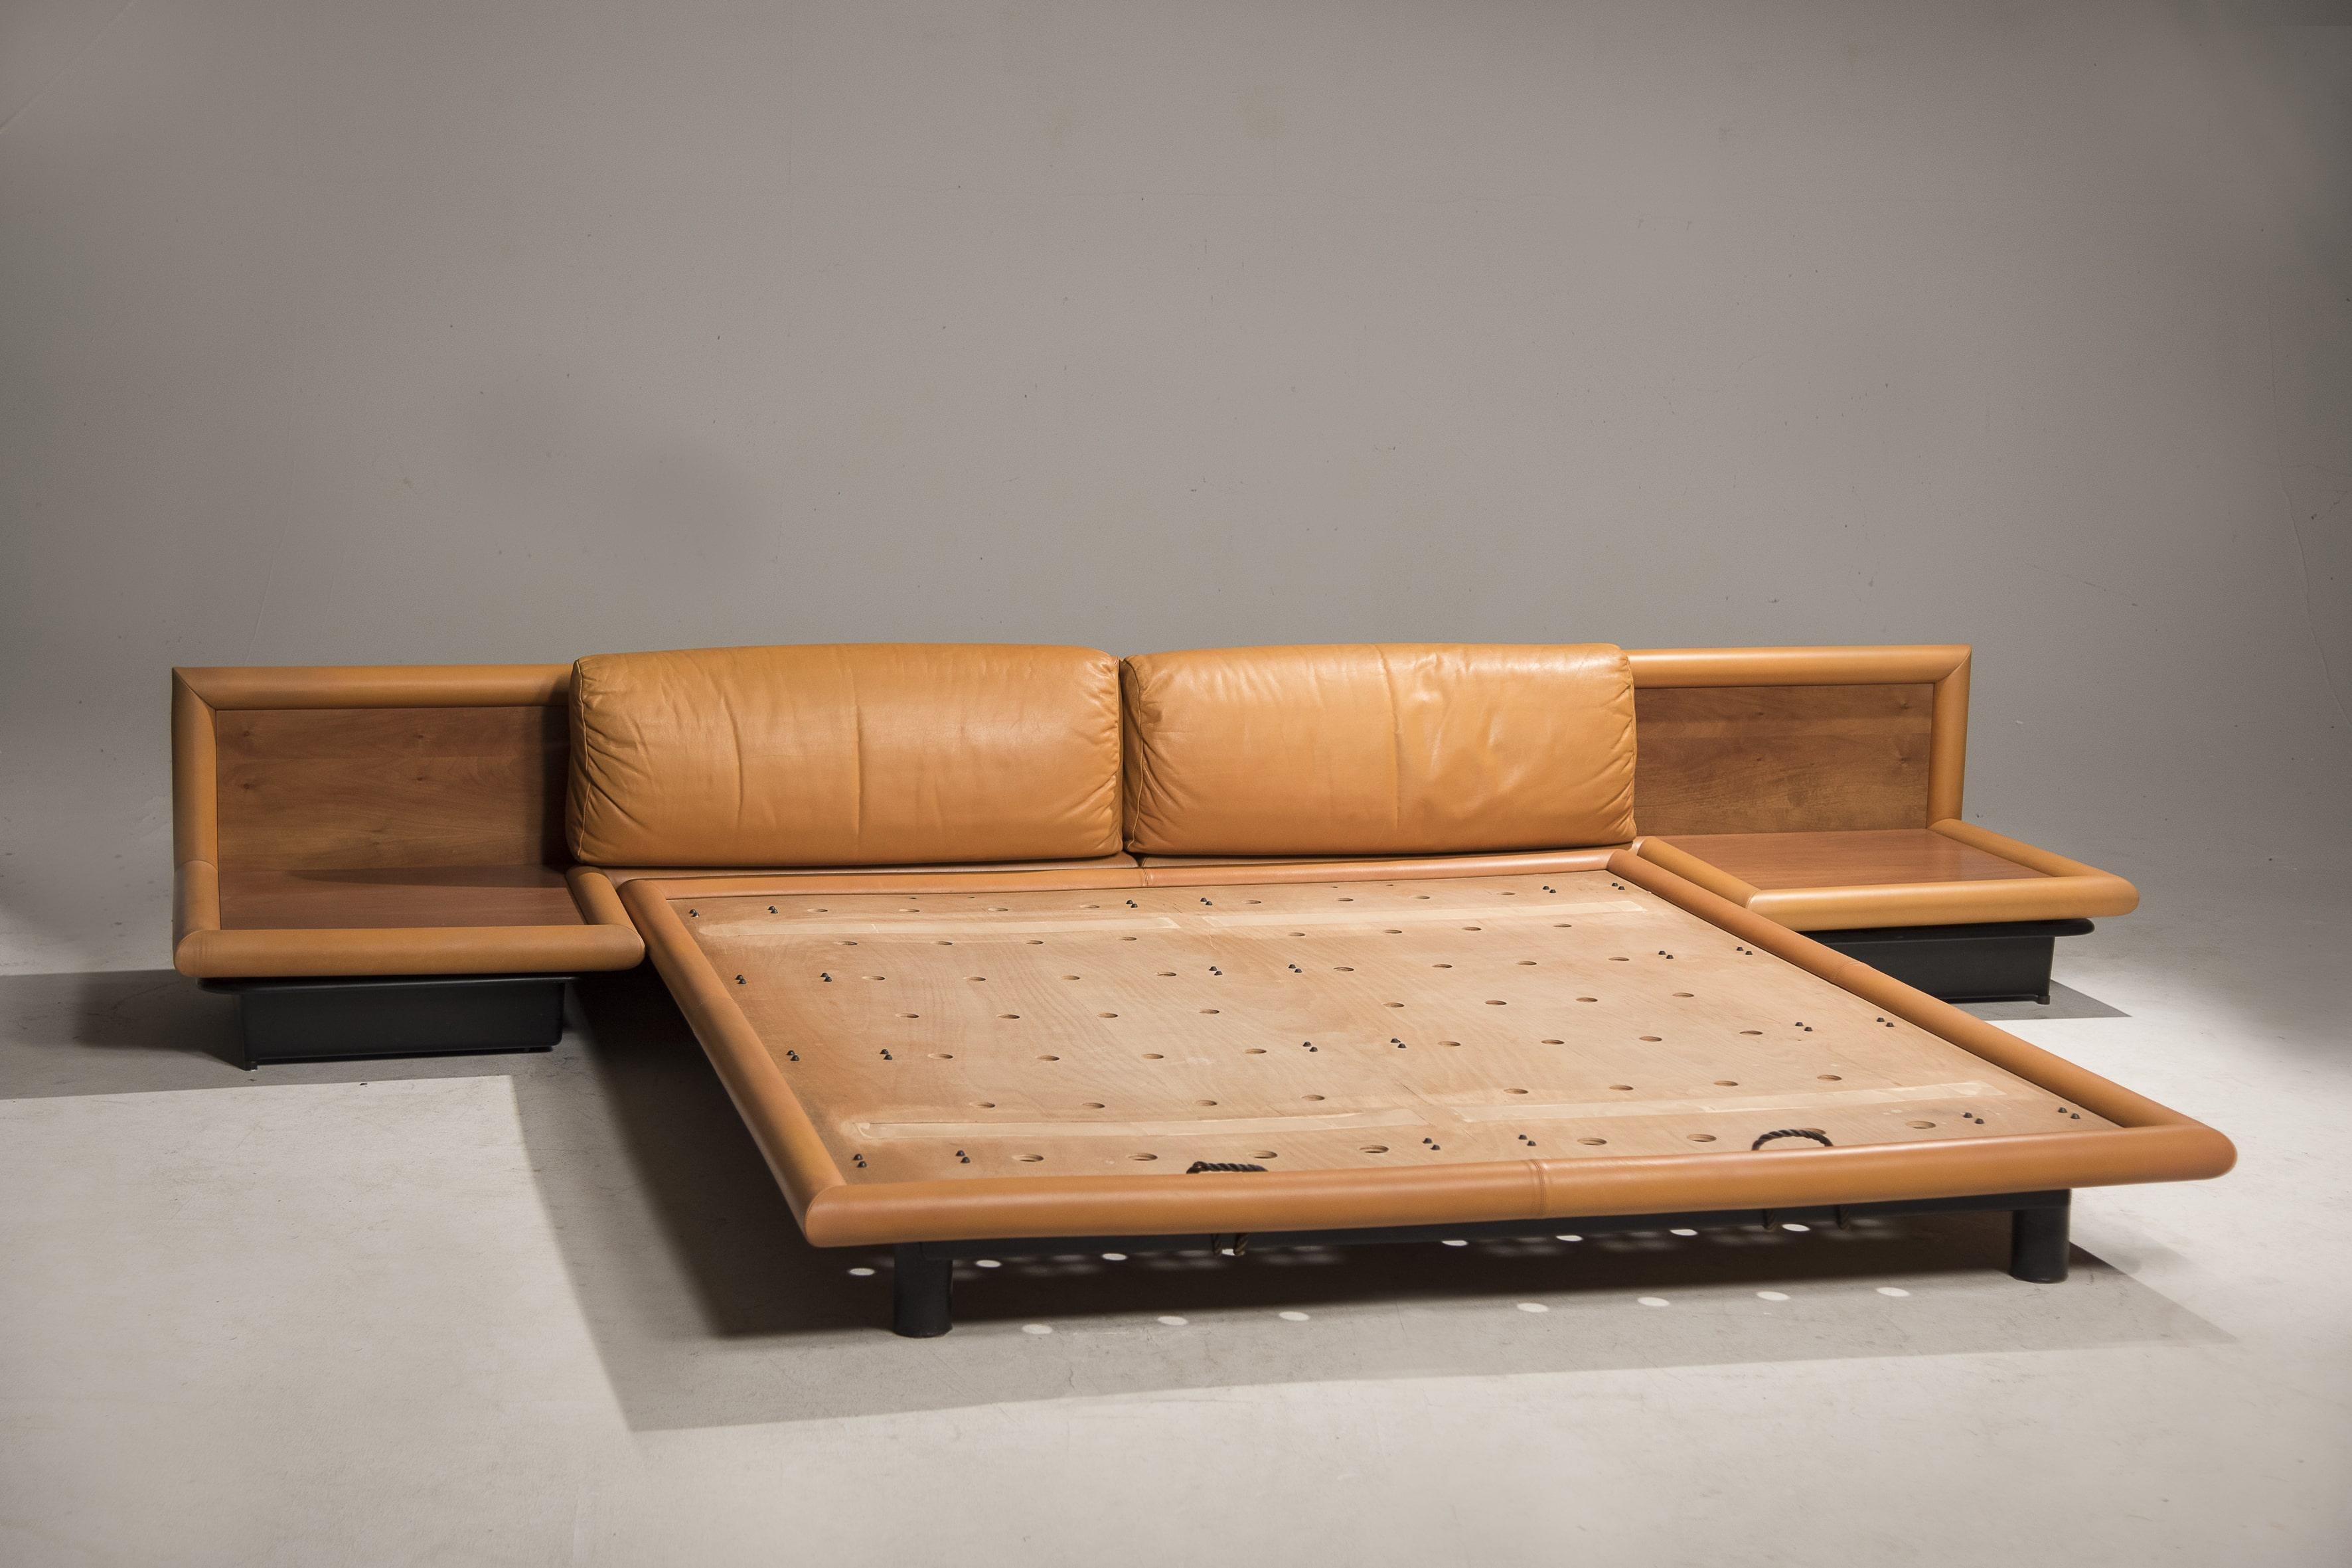 Afra & Tobia Scarpa - cadre de lit en cuir couleur cognac - composé d'une tête de lit avec tables de chevet intégrées et d'un sommier. Modèle 